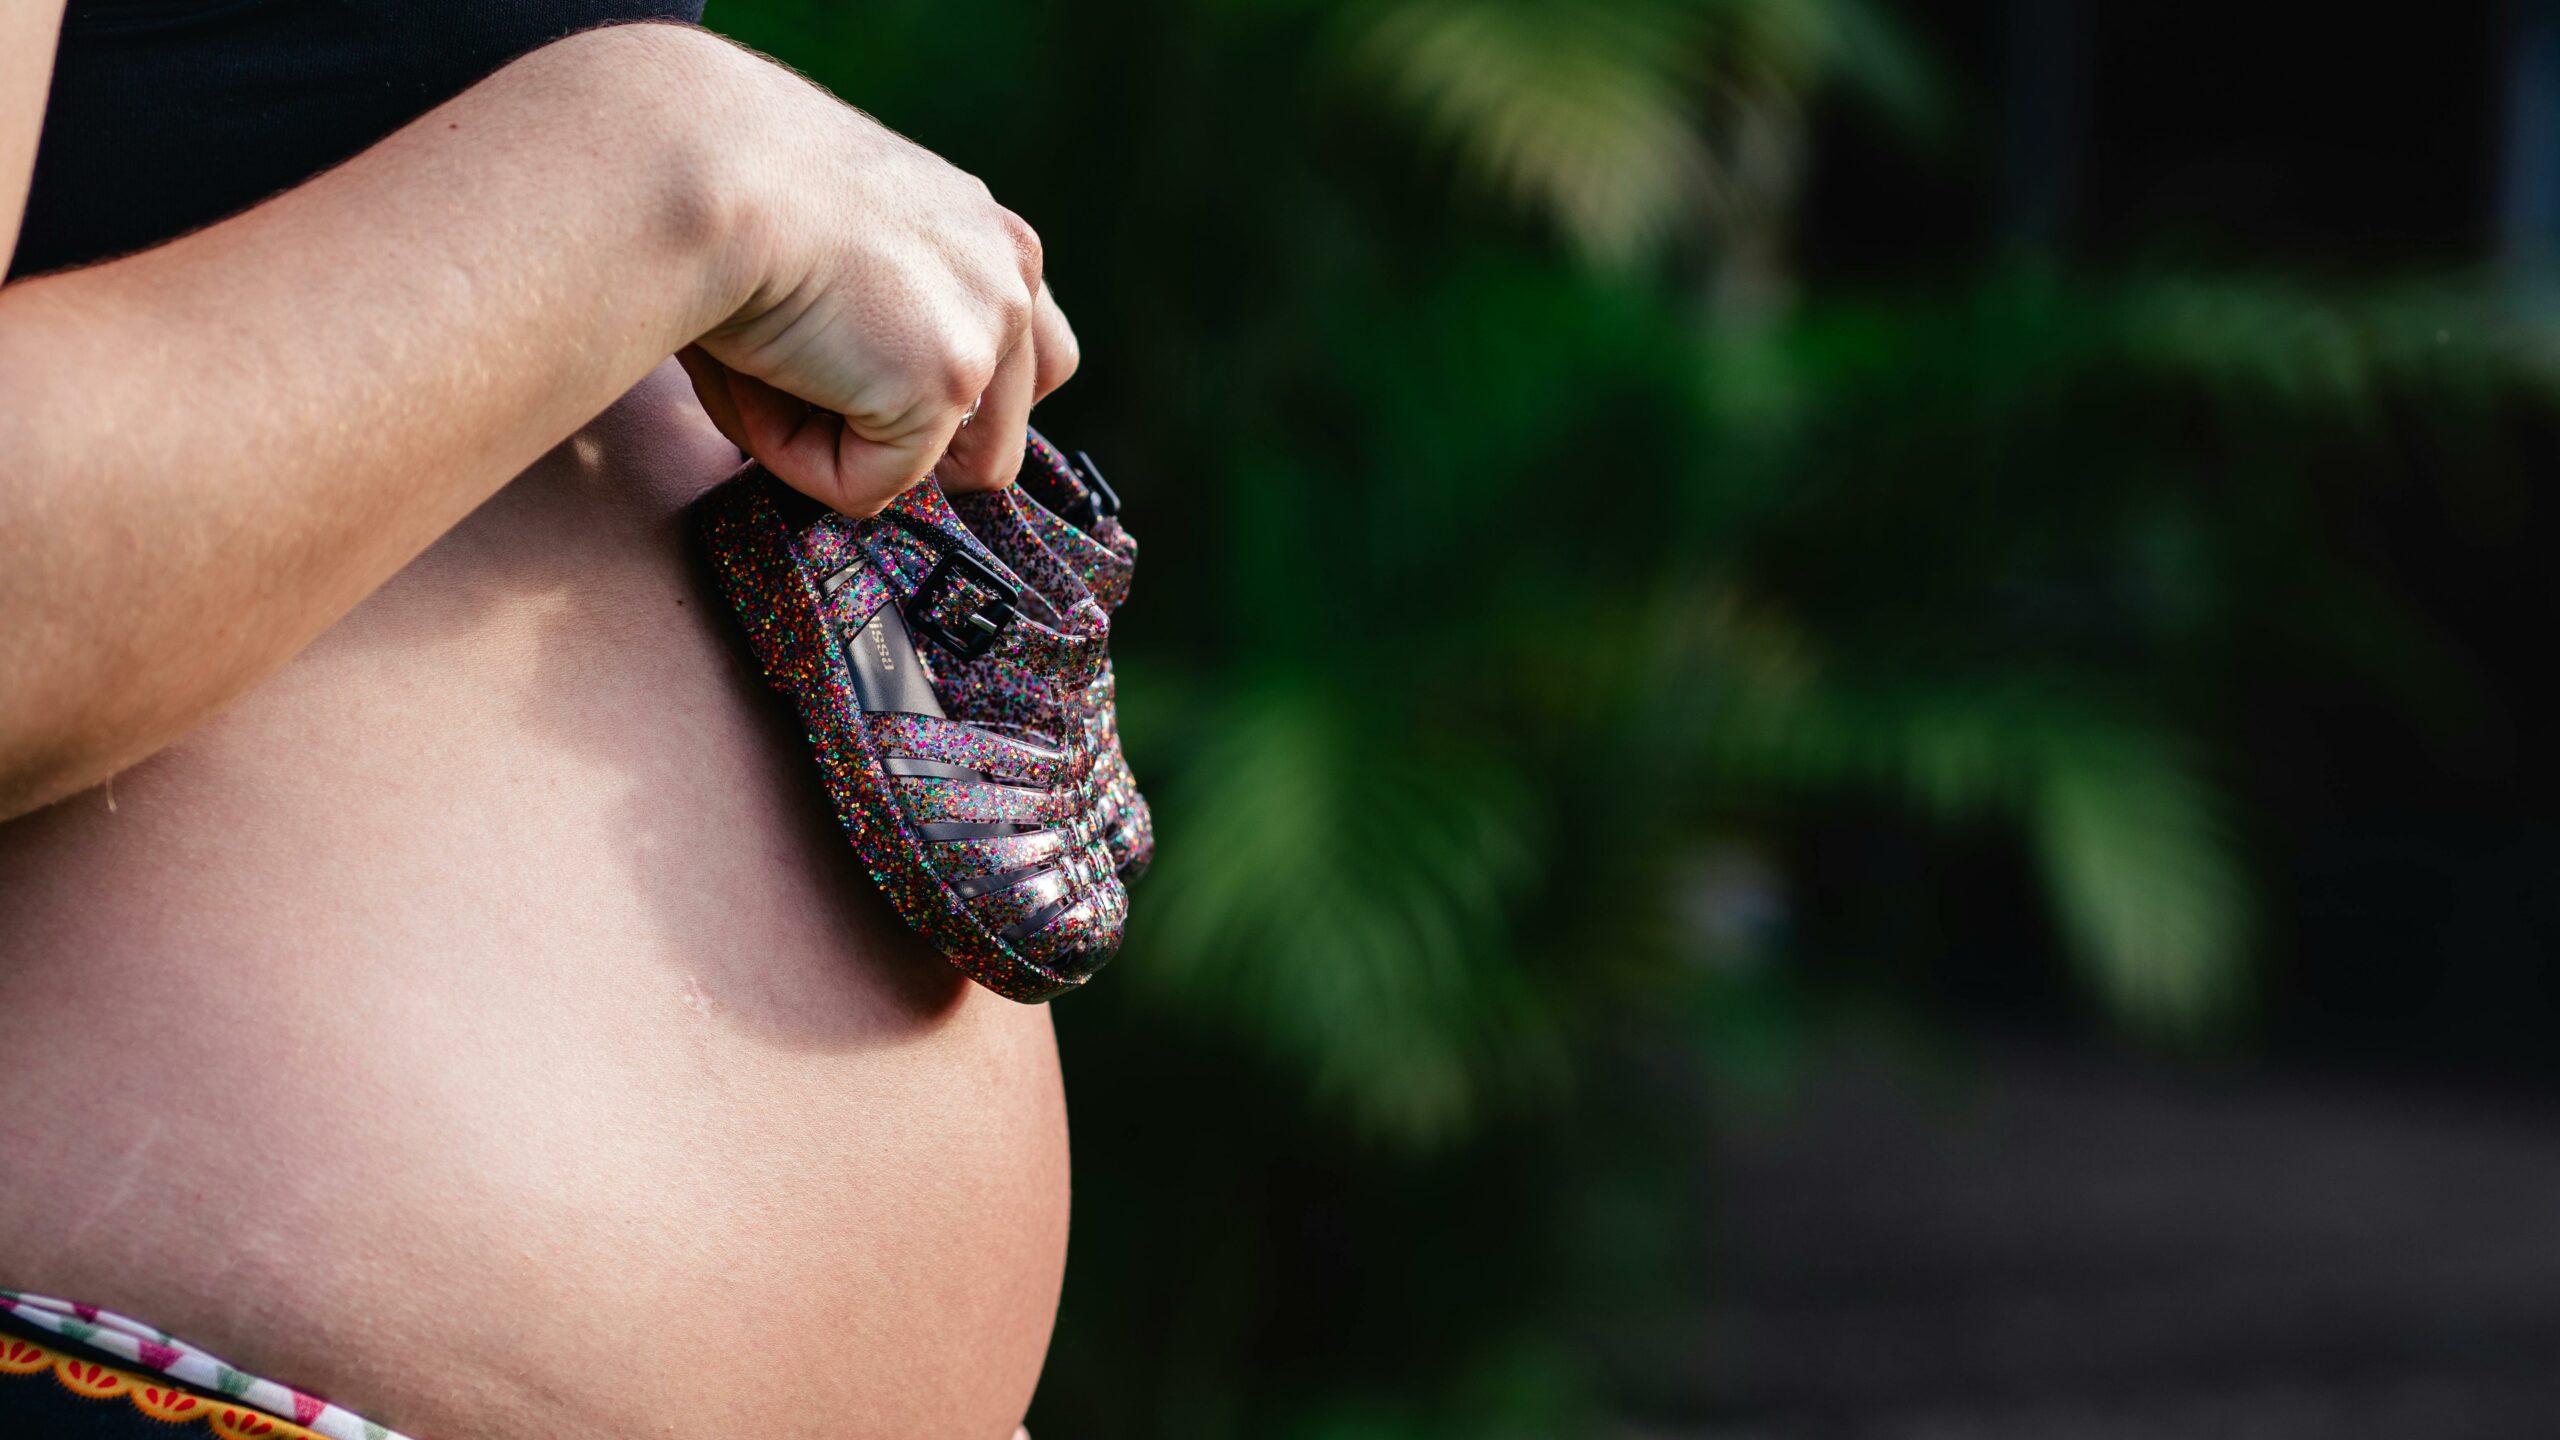 Salário-maternidade: como pedir o benefício gratuitamente e evitar golpes?